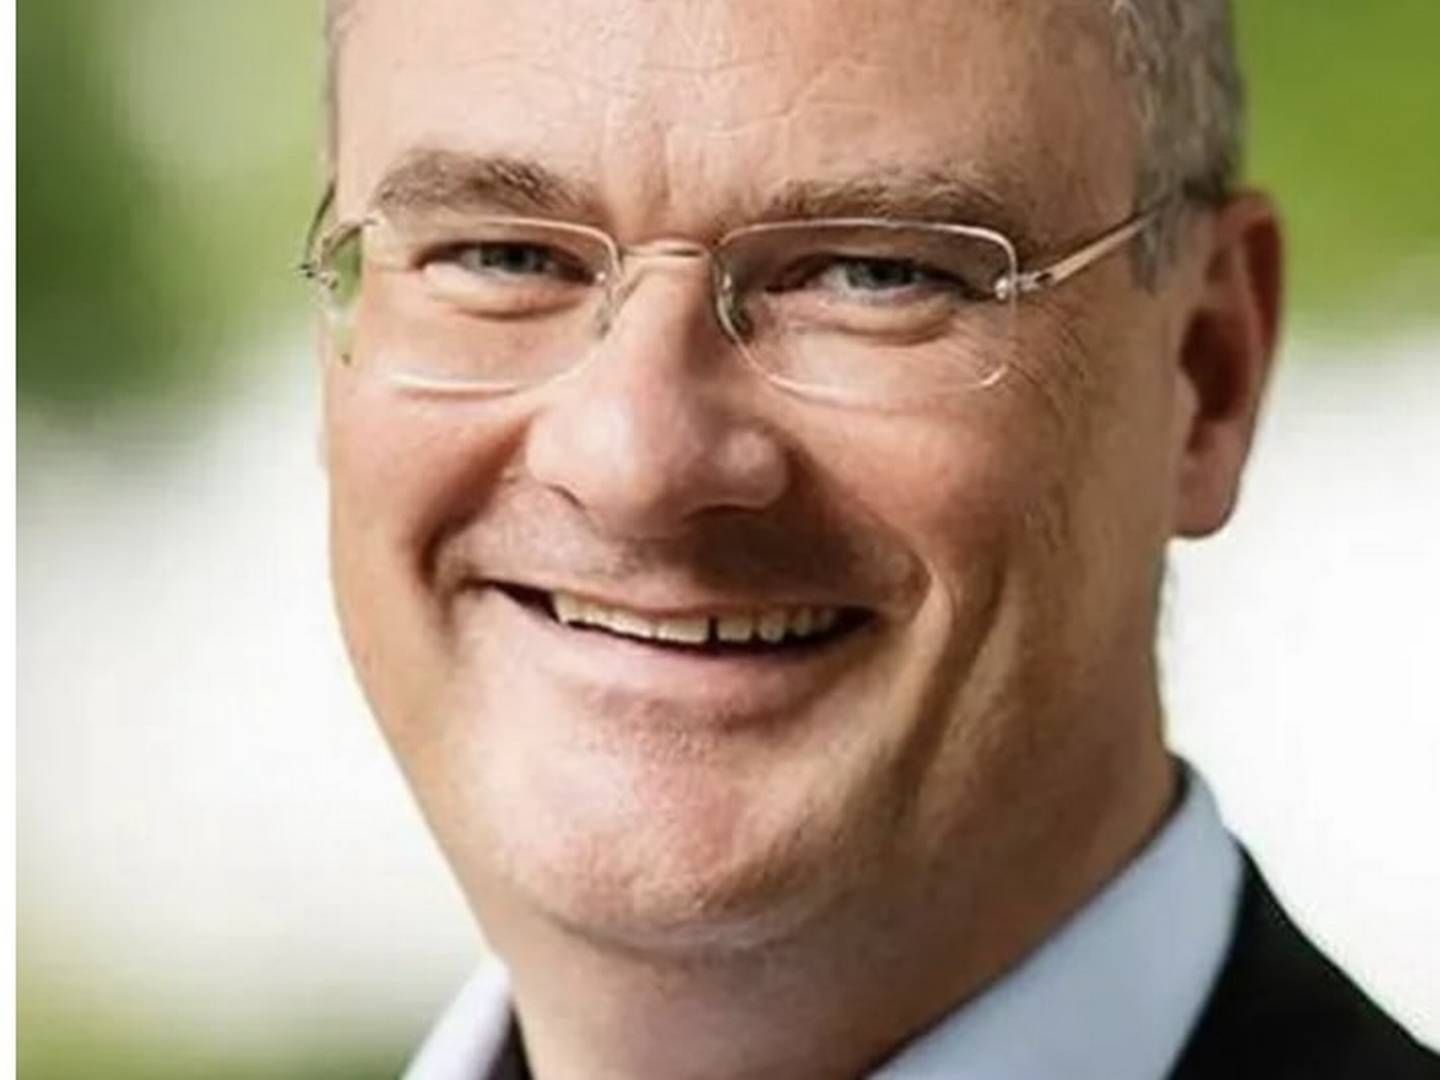 VIL NORDOVER: Jan Frich vil videre etter knapt et år ved Diakonhjemmet sykehus. | Foto: Helse Sør-Øst/Diakonhjemmet